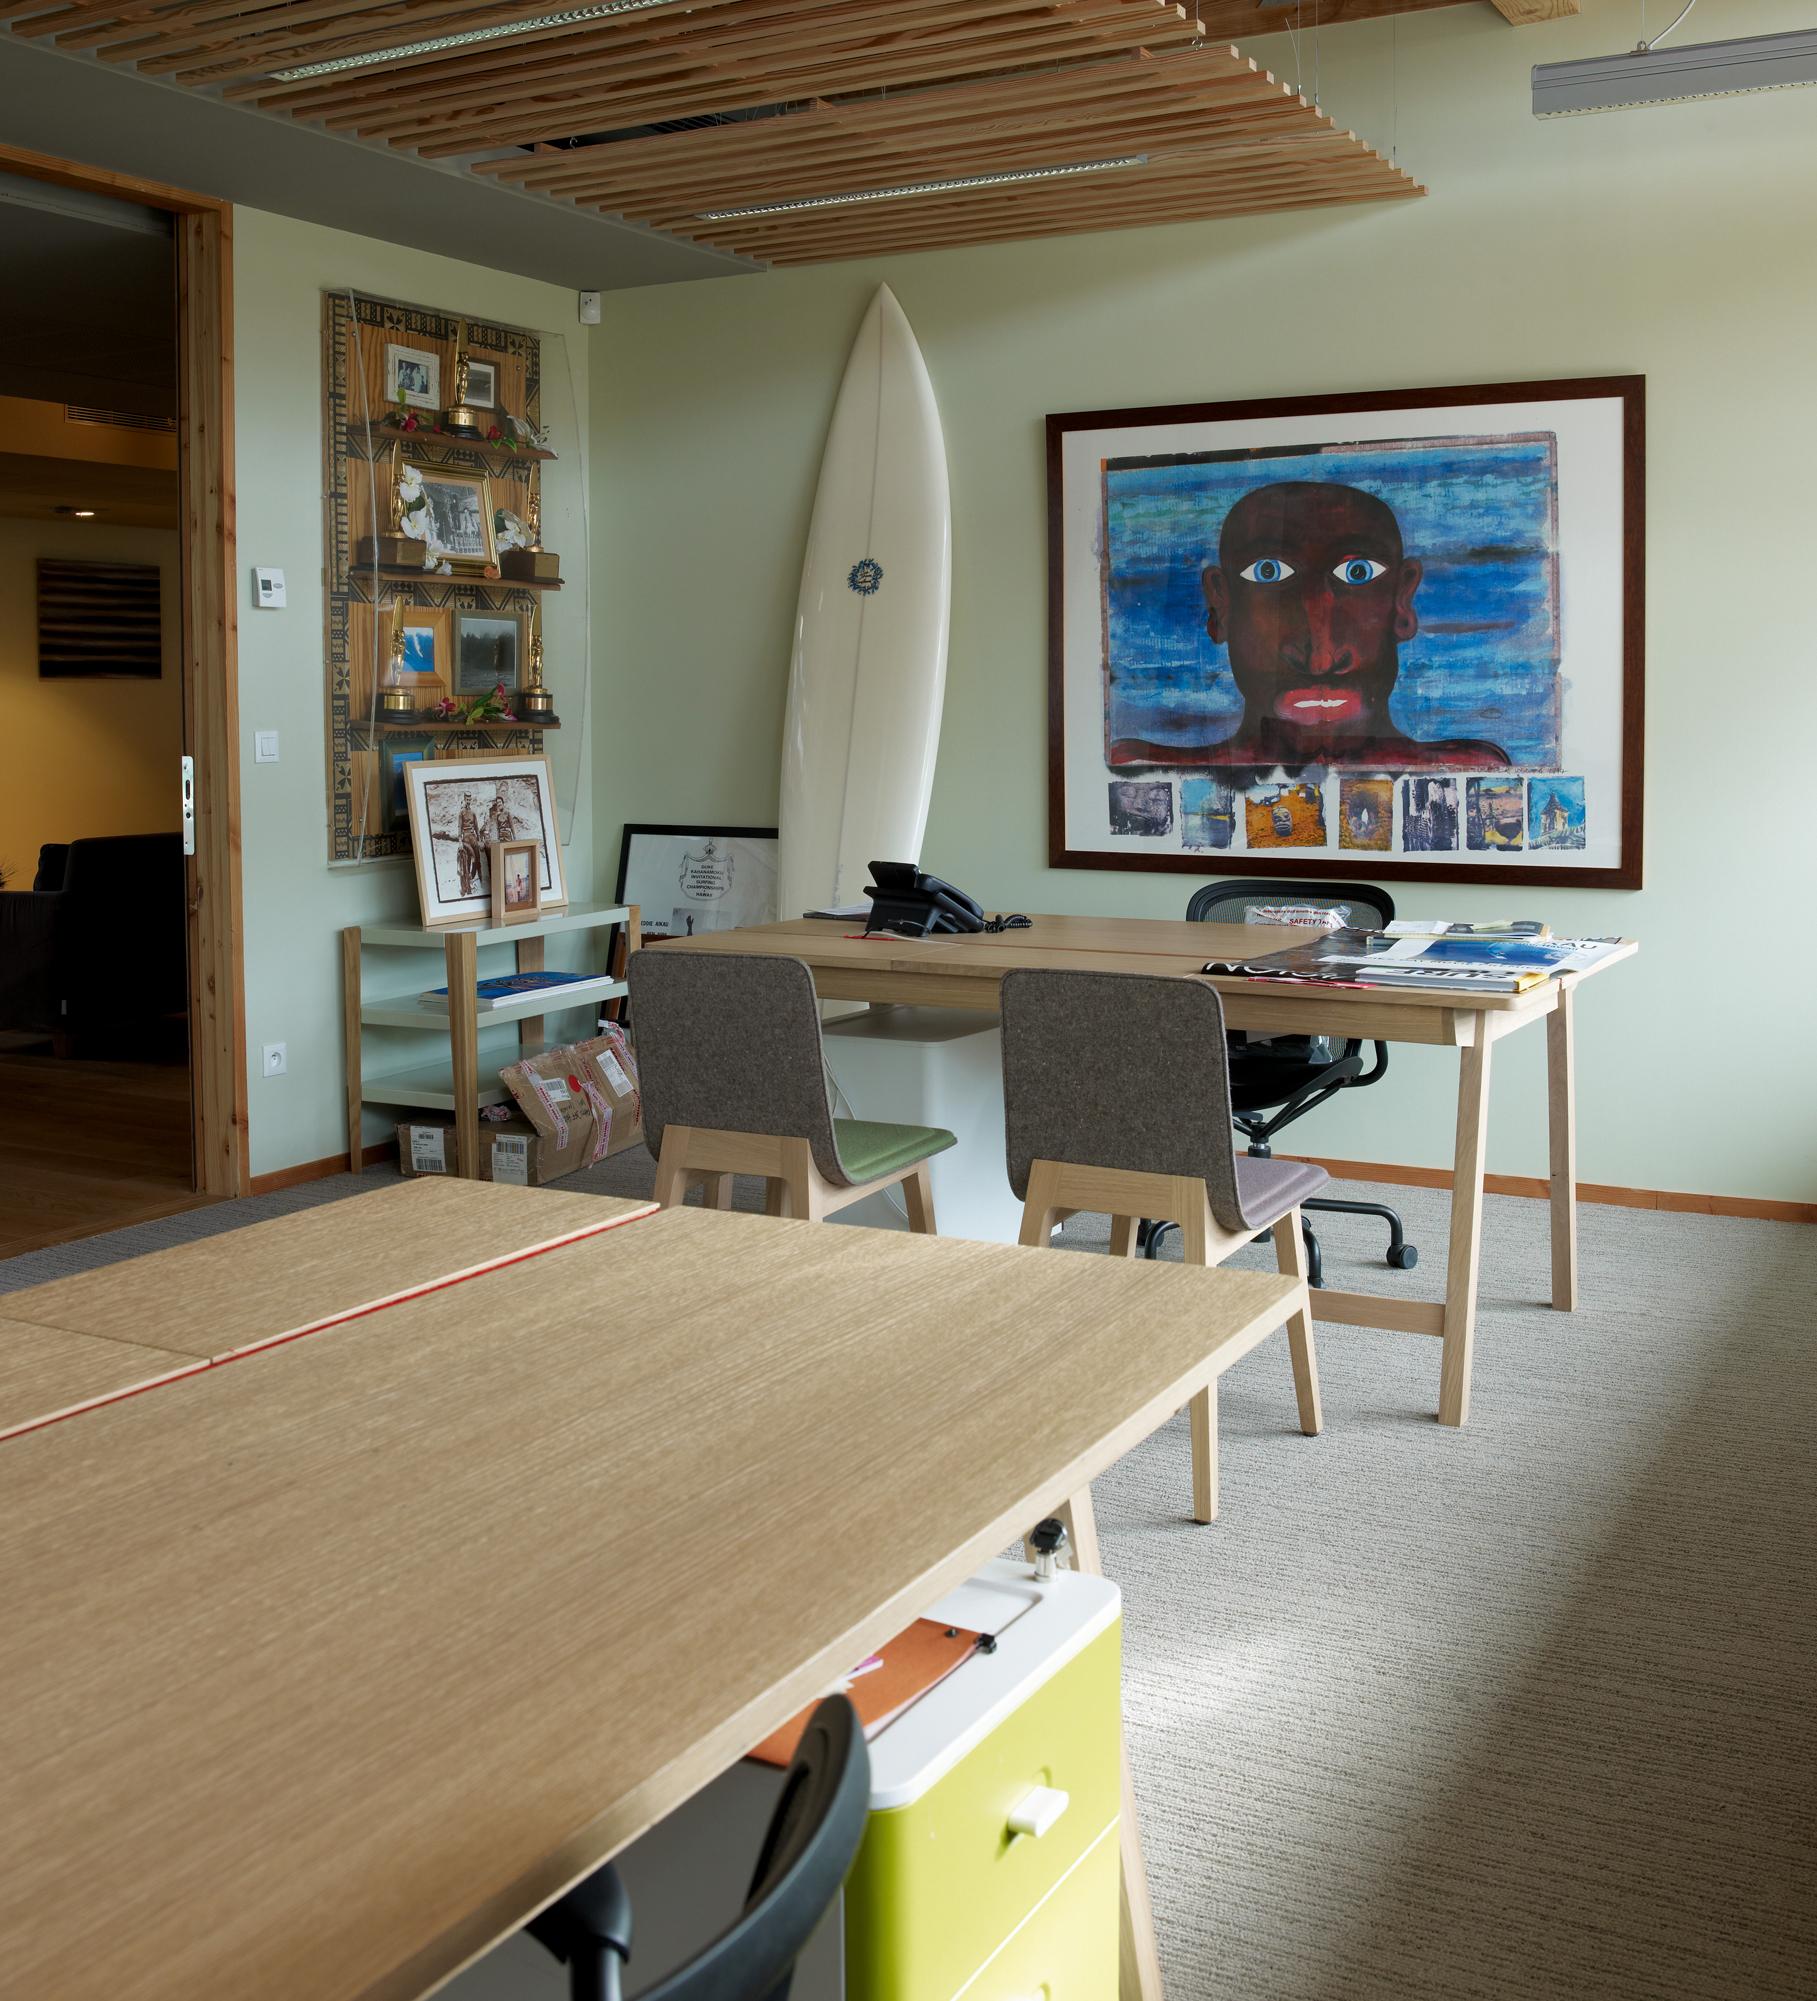 Arbeitszimmer im natürlichen Surfer-Look #arbeitszimmer #hölzerneswandregal #surfbrett #grauerteppichboden #beachlook ©Alki